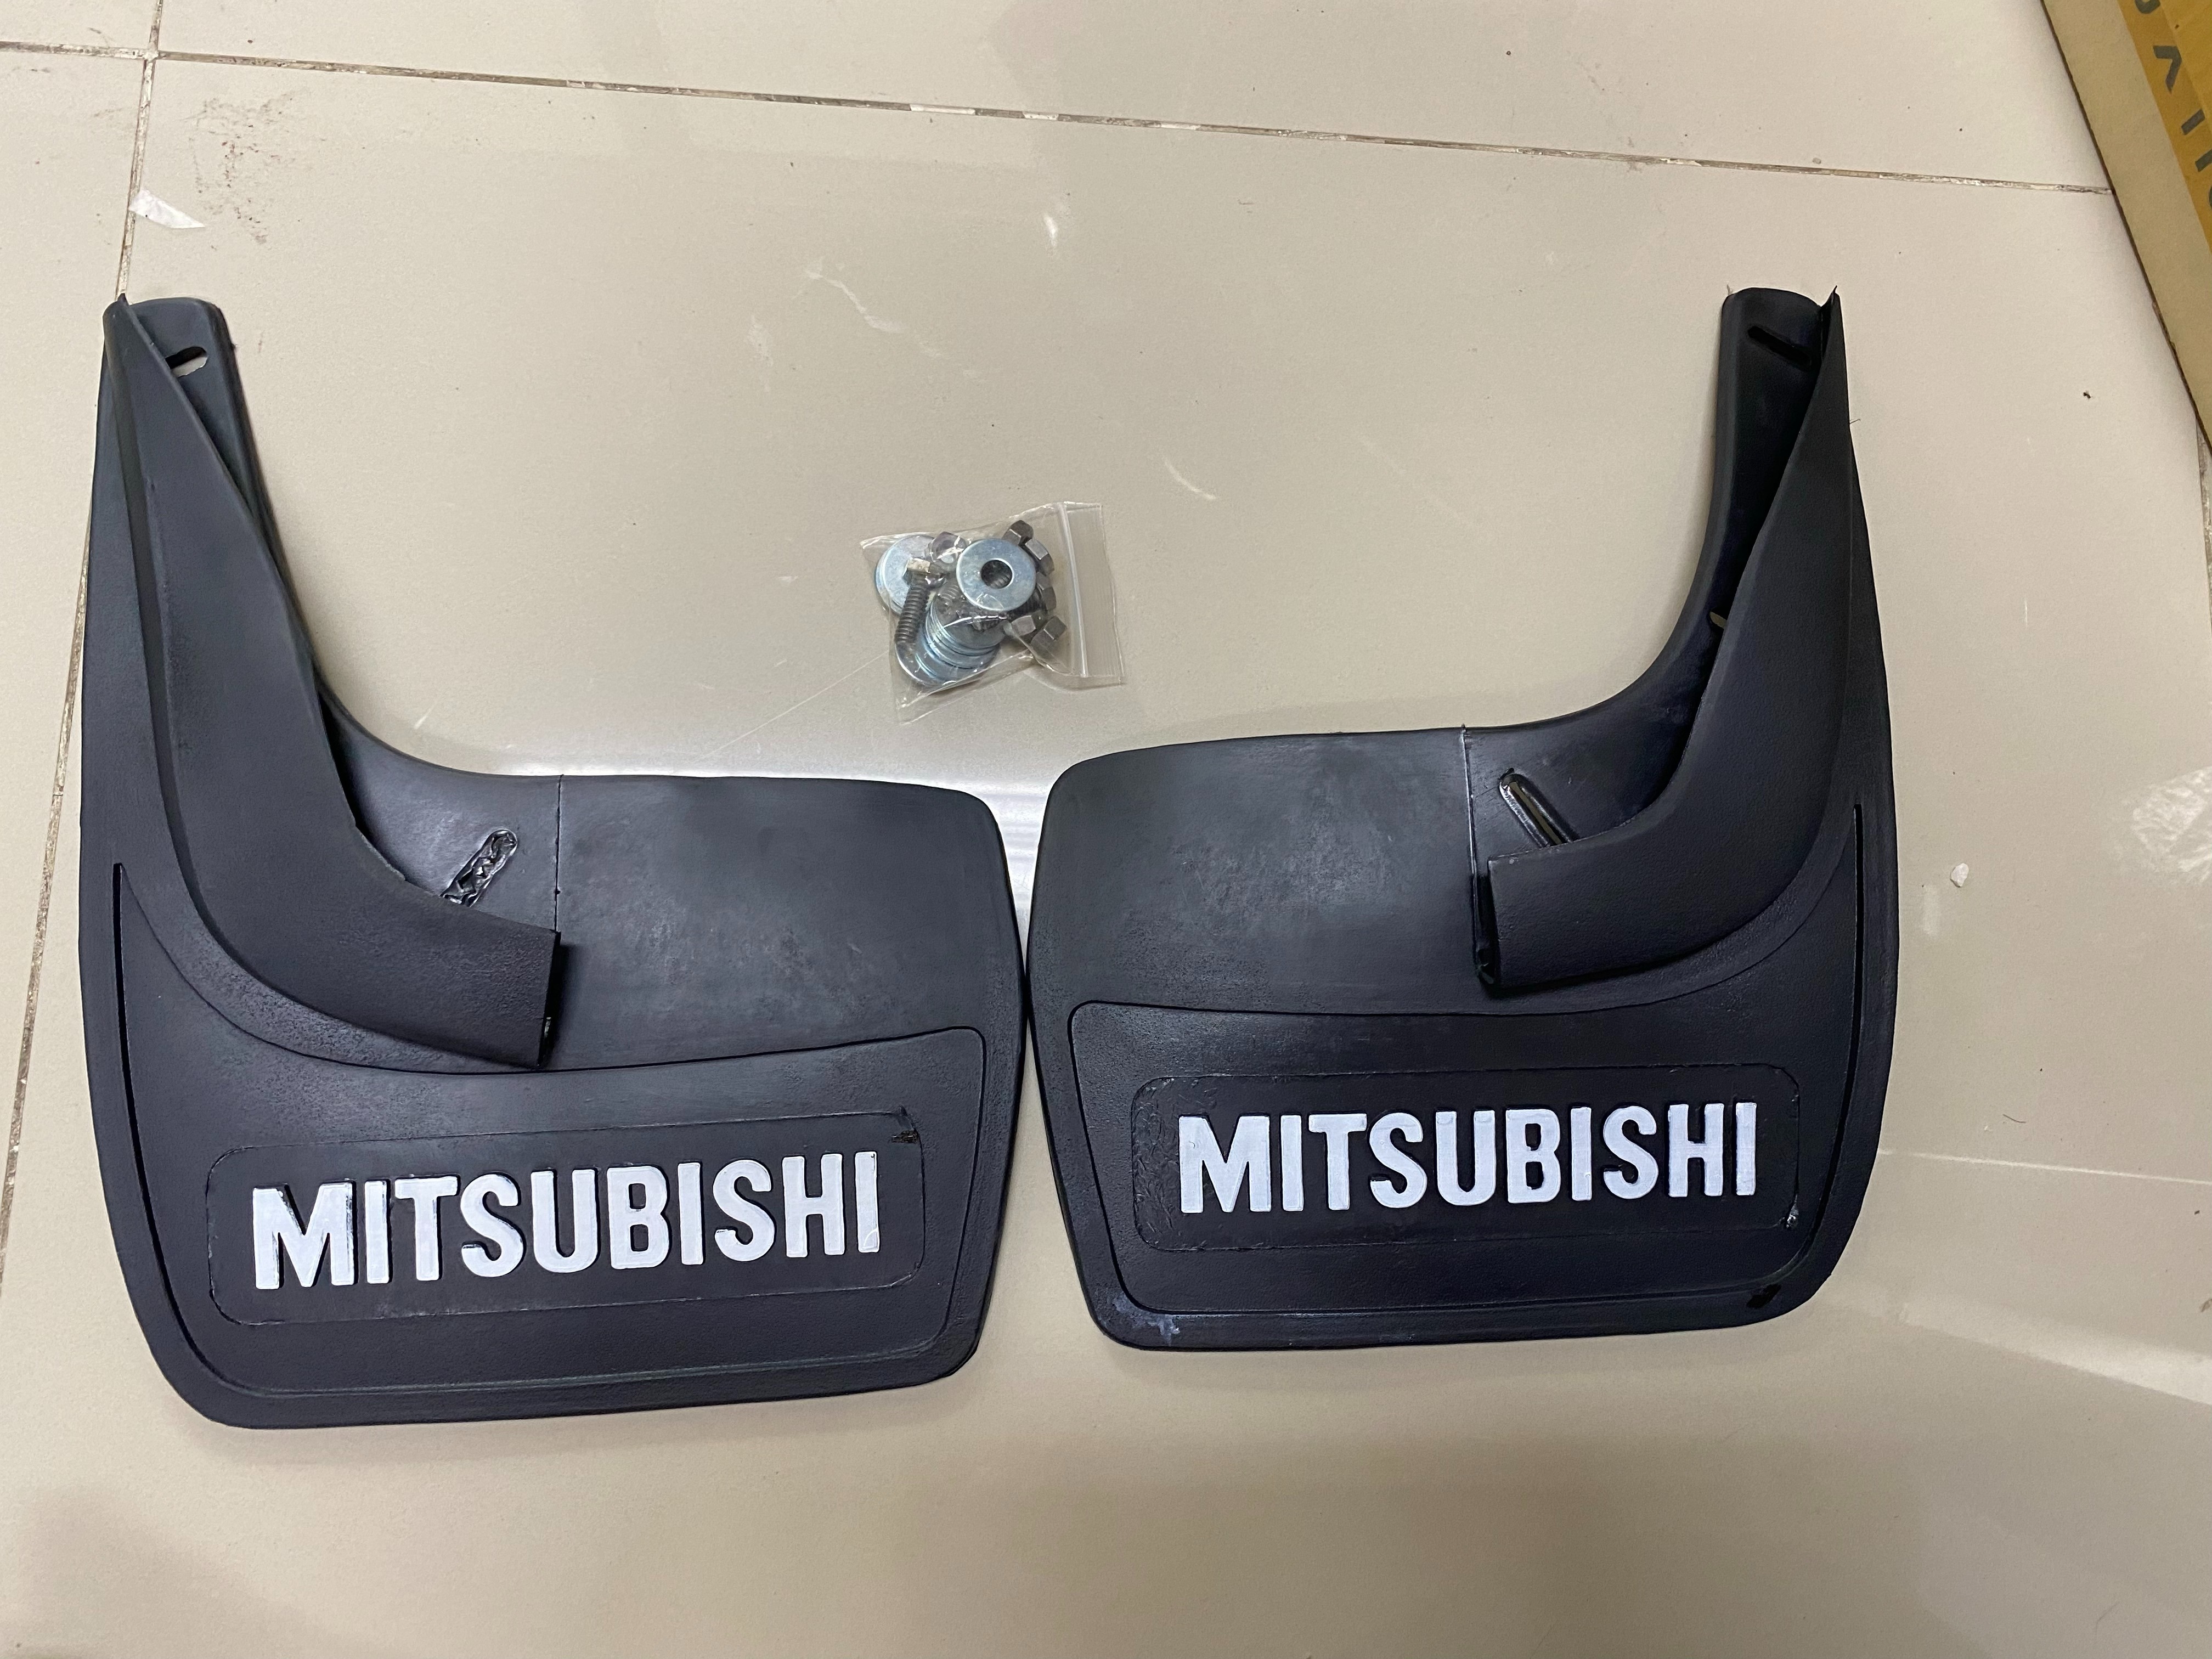 ยางบังโคลน  ยางกันโคลน หน้า+หลัง   รถเก๋ง ทั่วไป ยางสีดำ เขียน  MITSUBISHI 4 ชิ้น Univeral Front  Rear Back Mud Guard Rubber มีเก็บเงินปลายทาง